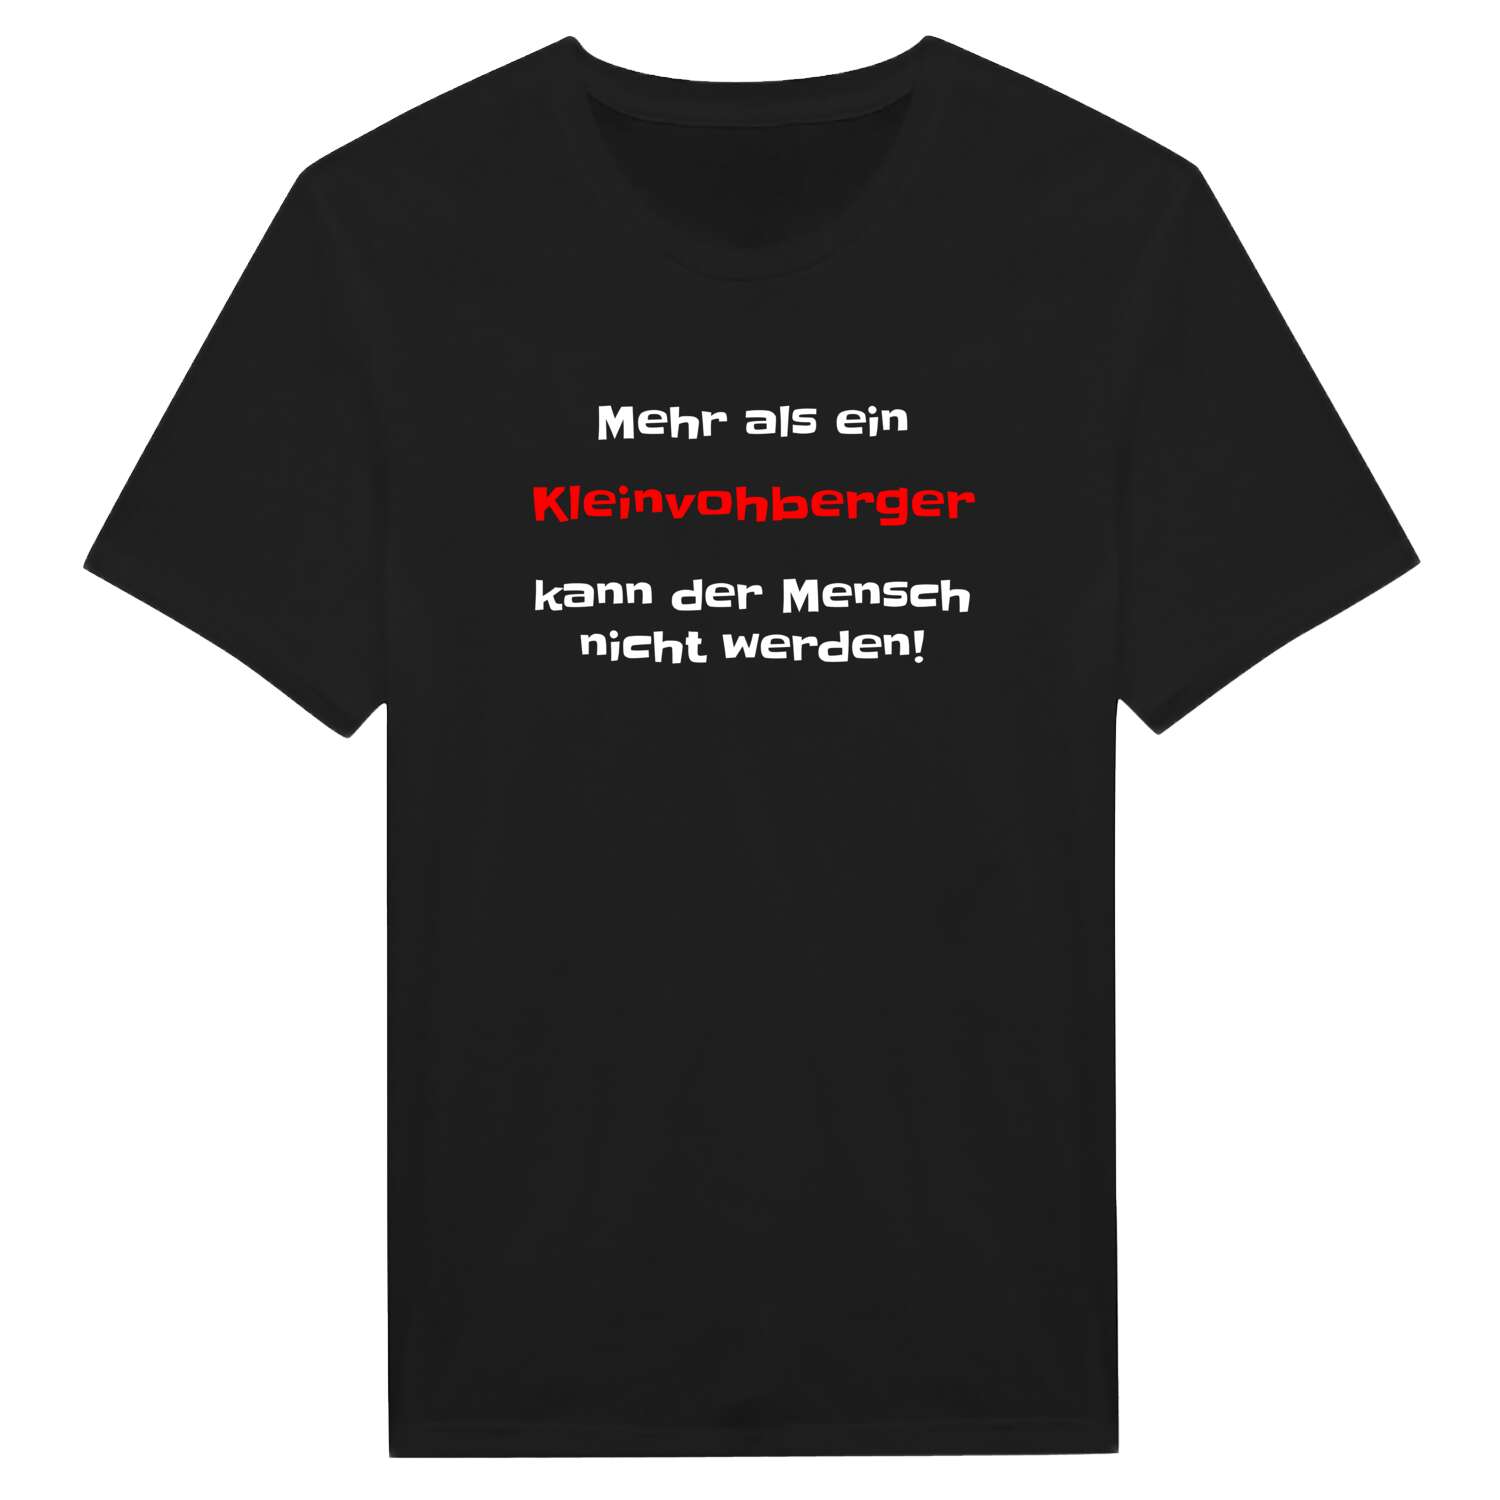 Kleinvohberg T-Shirt »Mehr als ein«